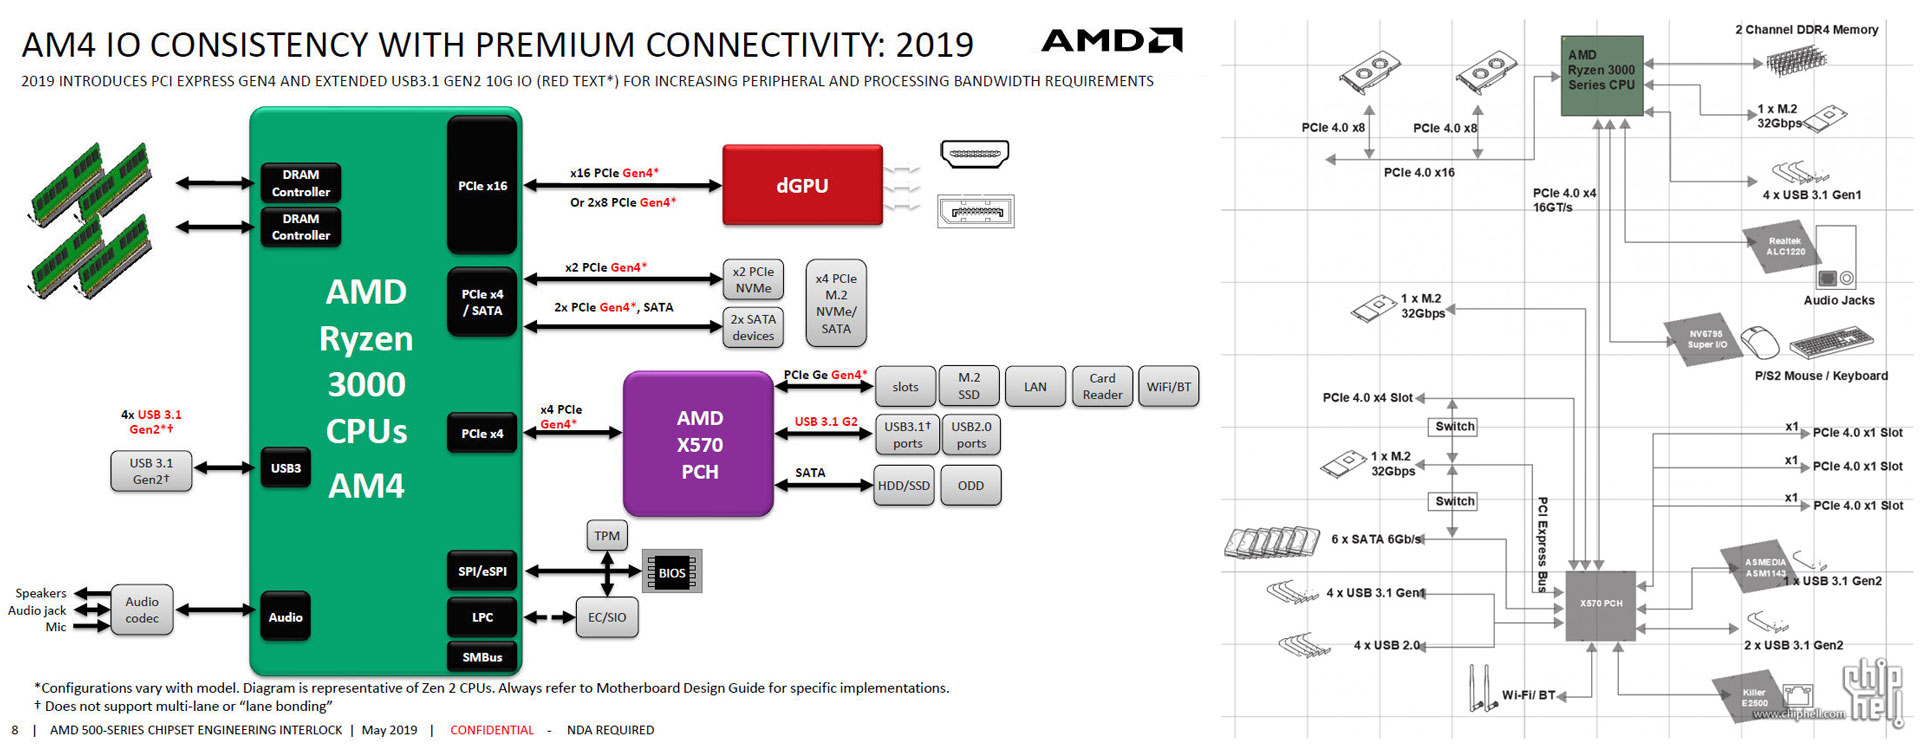 MSI previews pair of AMD X570 motherboards - Mainboard - News - HEXUS.net